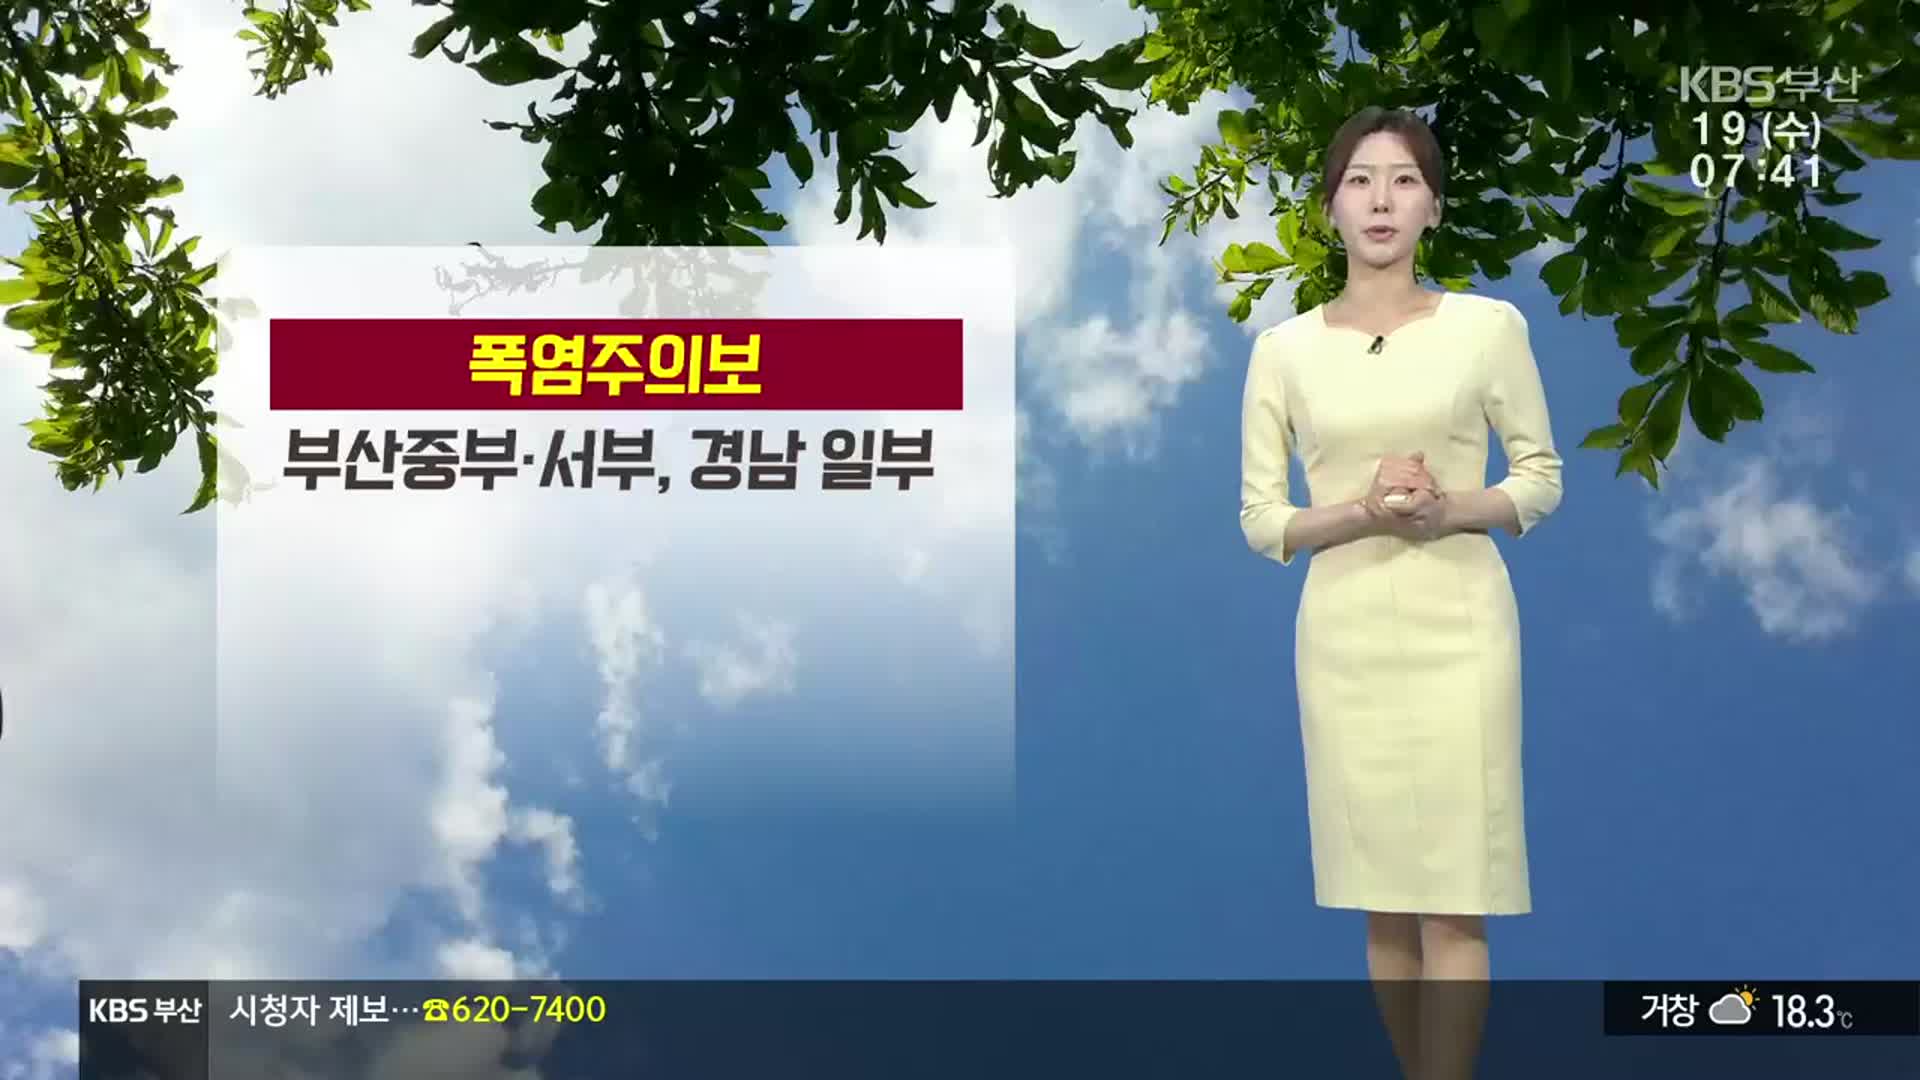 [날씨] 부산 중부·서부 폭염주의보…올 들어 가장 더워